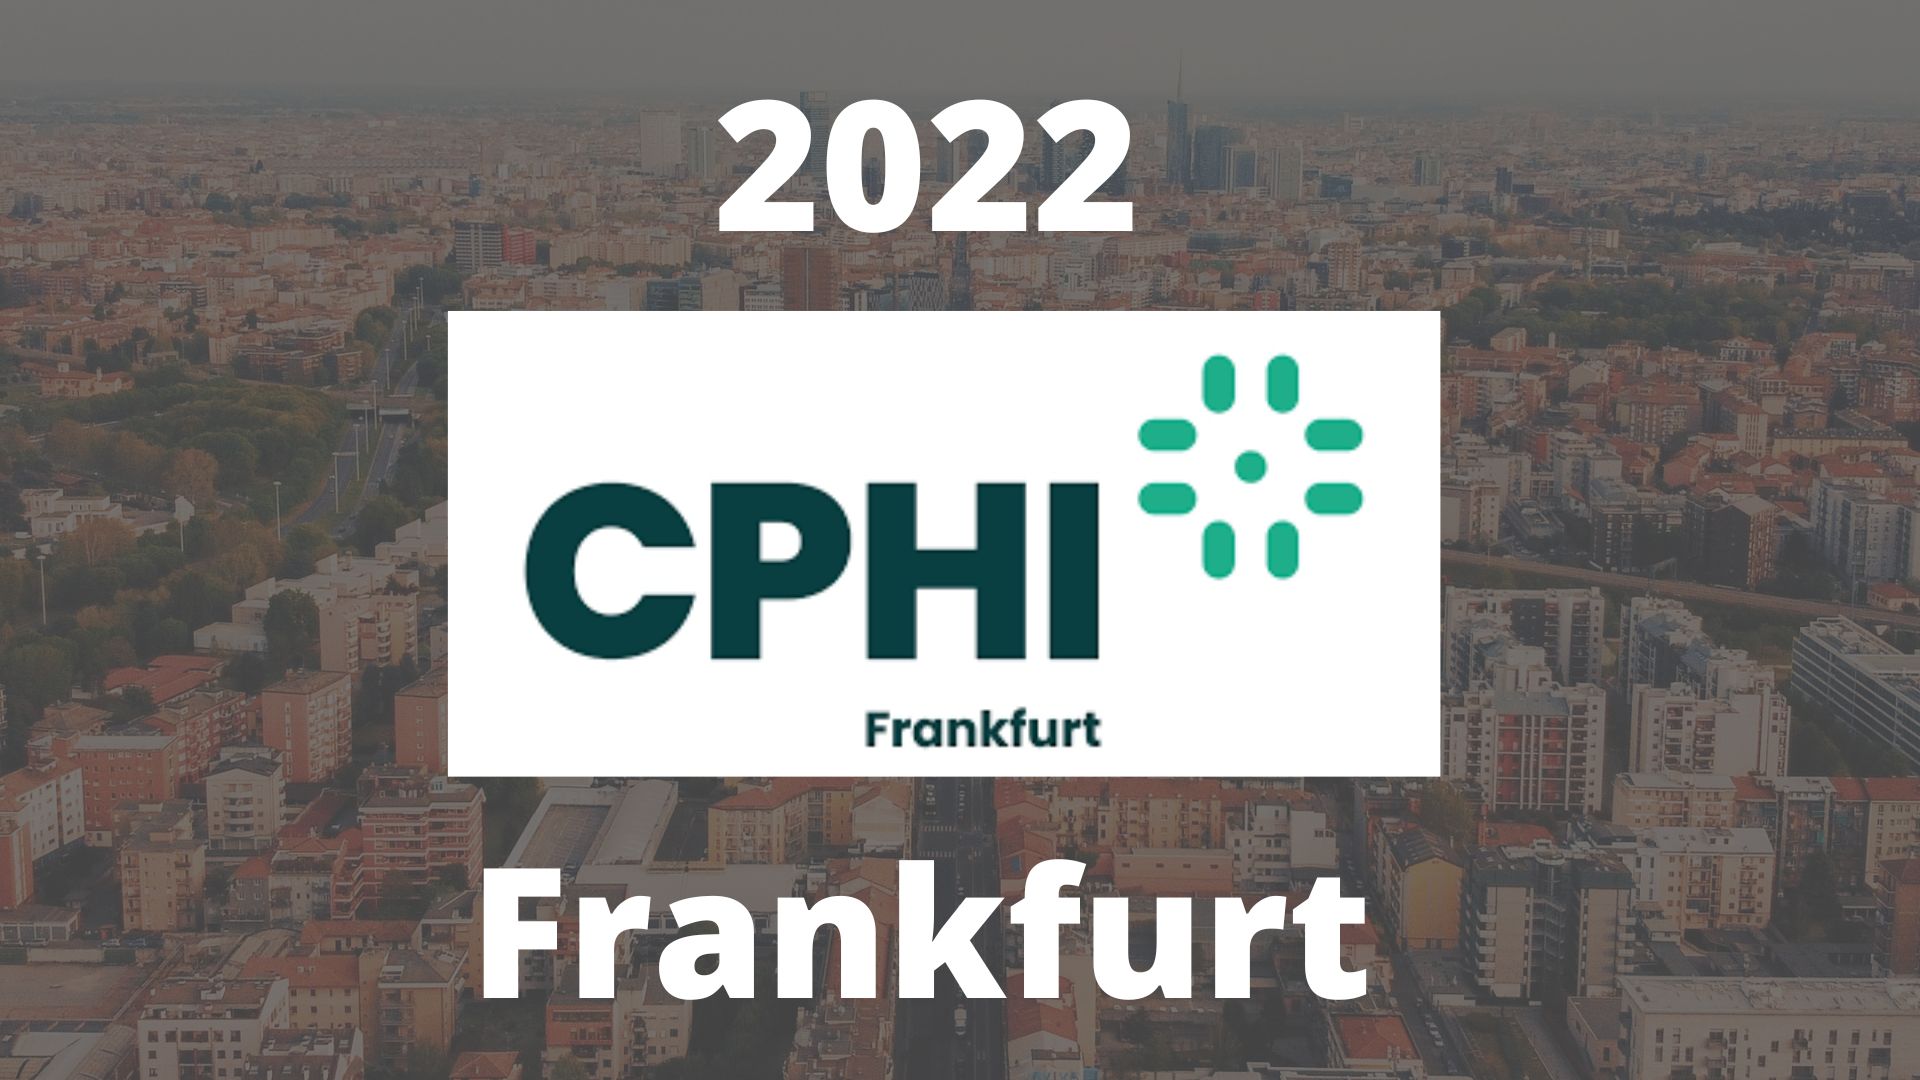 CPhI 2022 Frankfurt